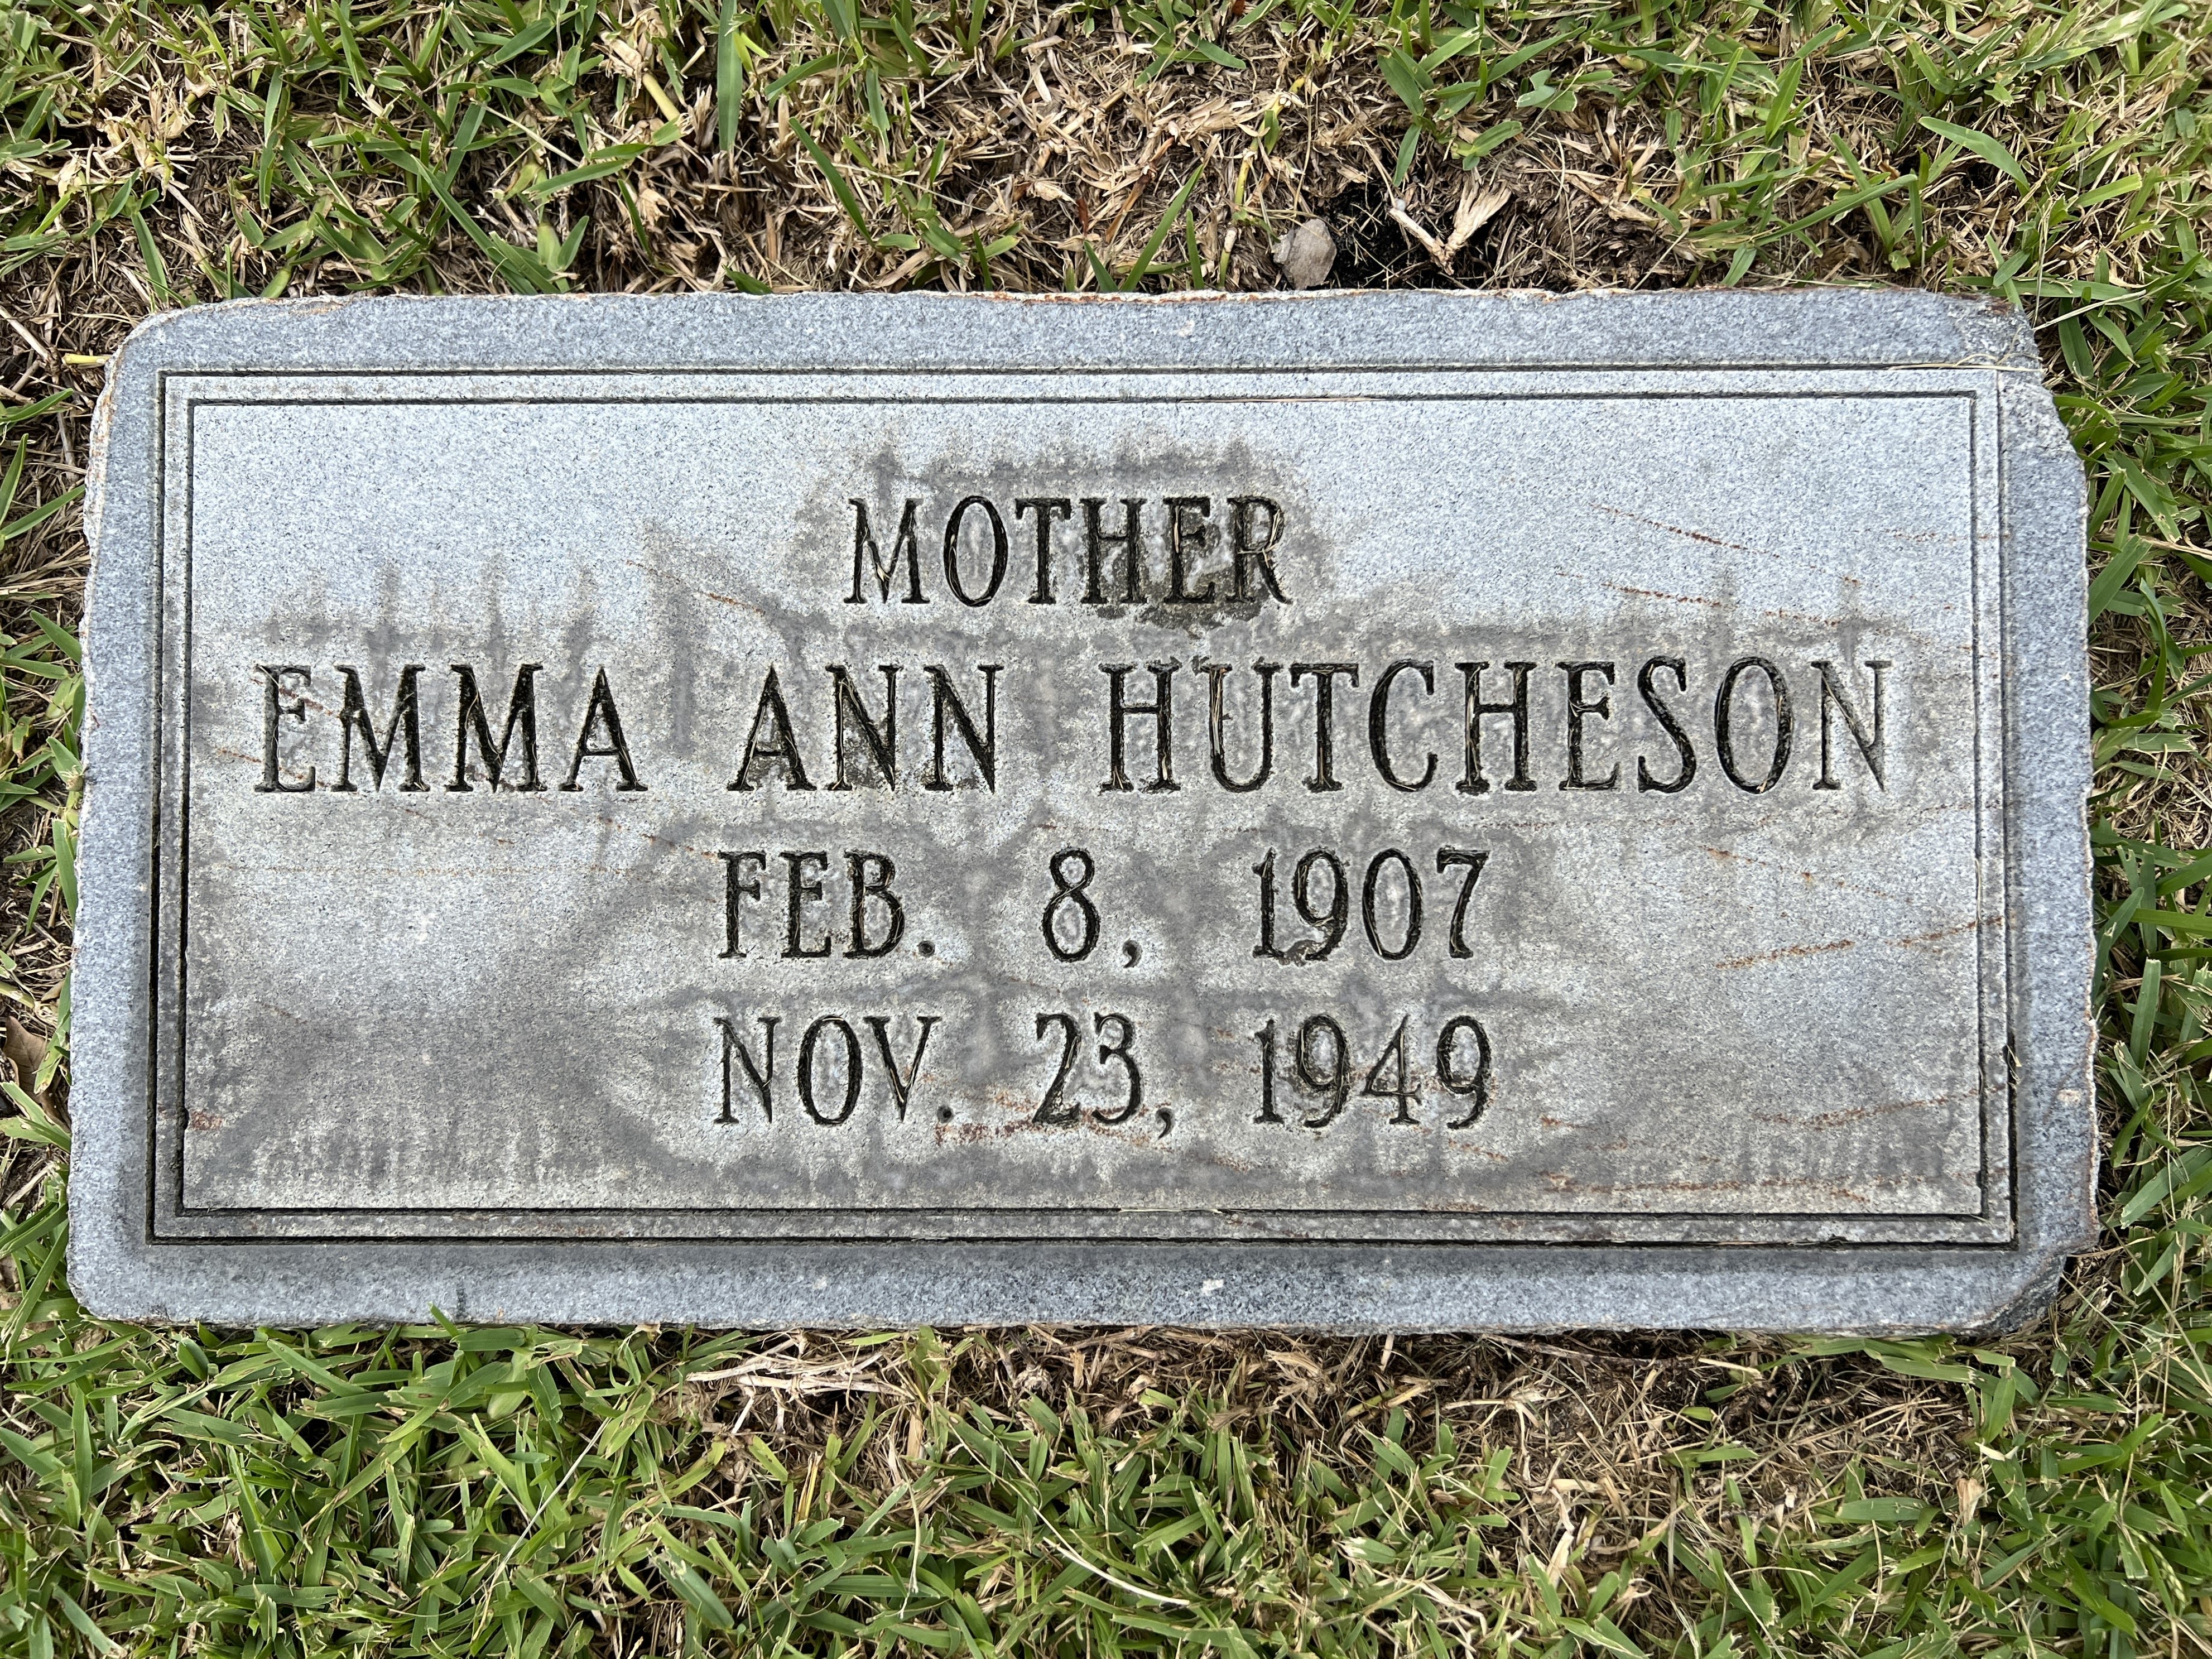 Emma Ann Hutcheson